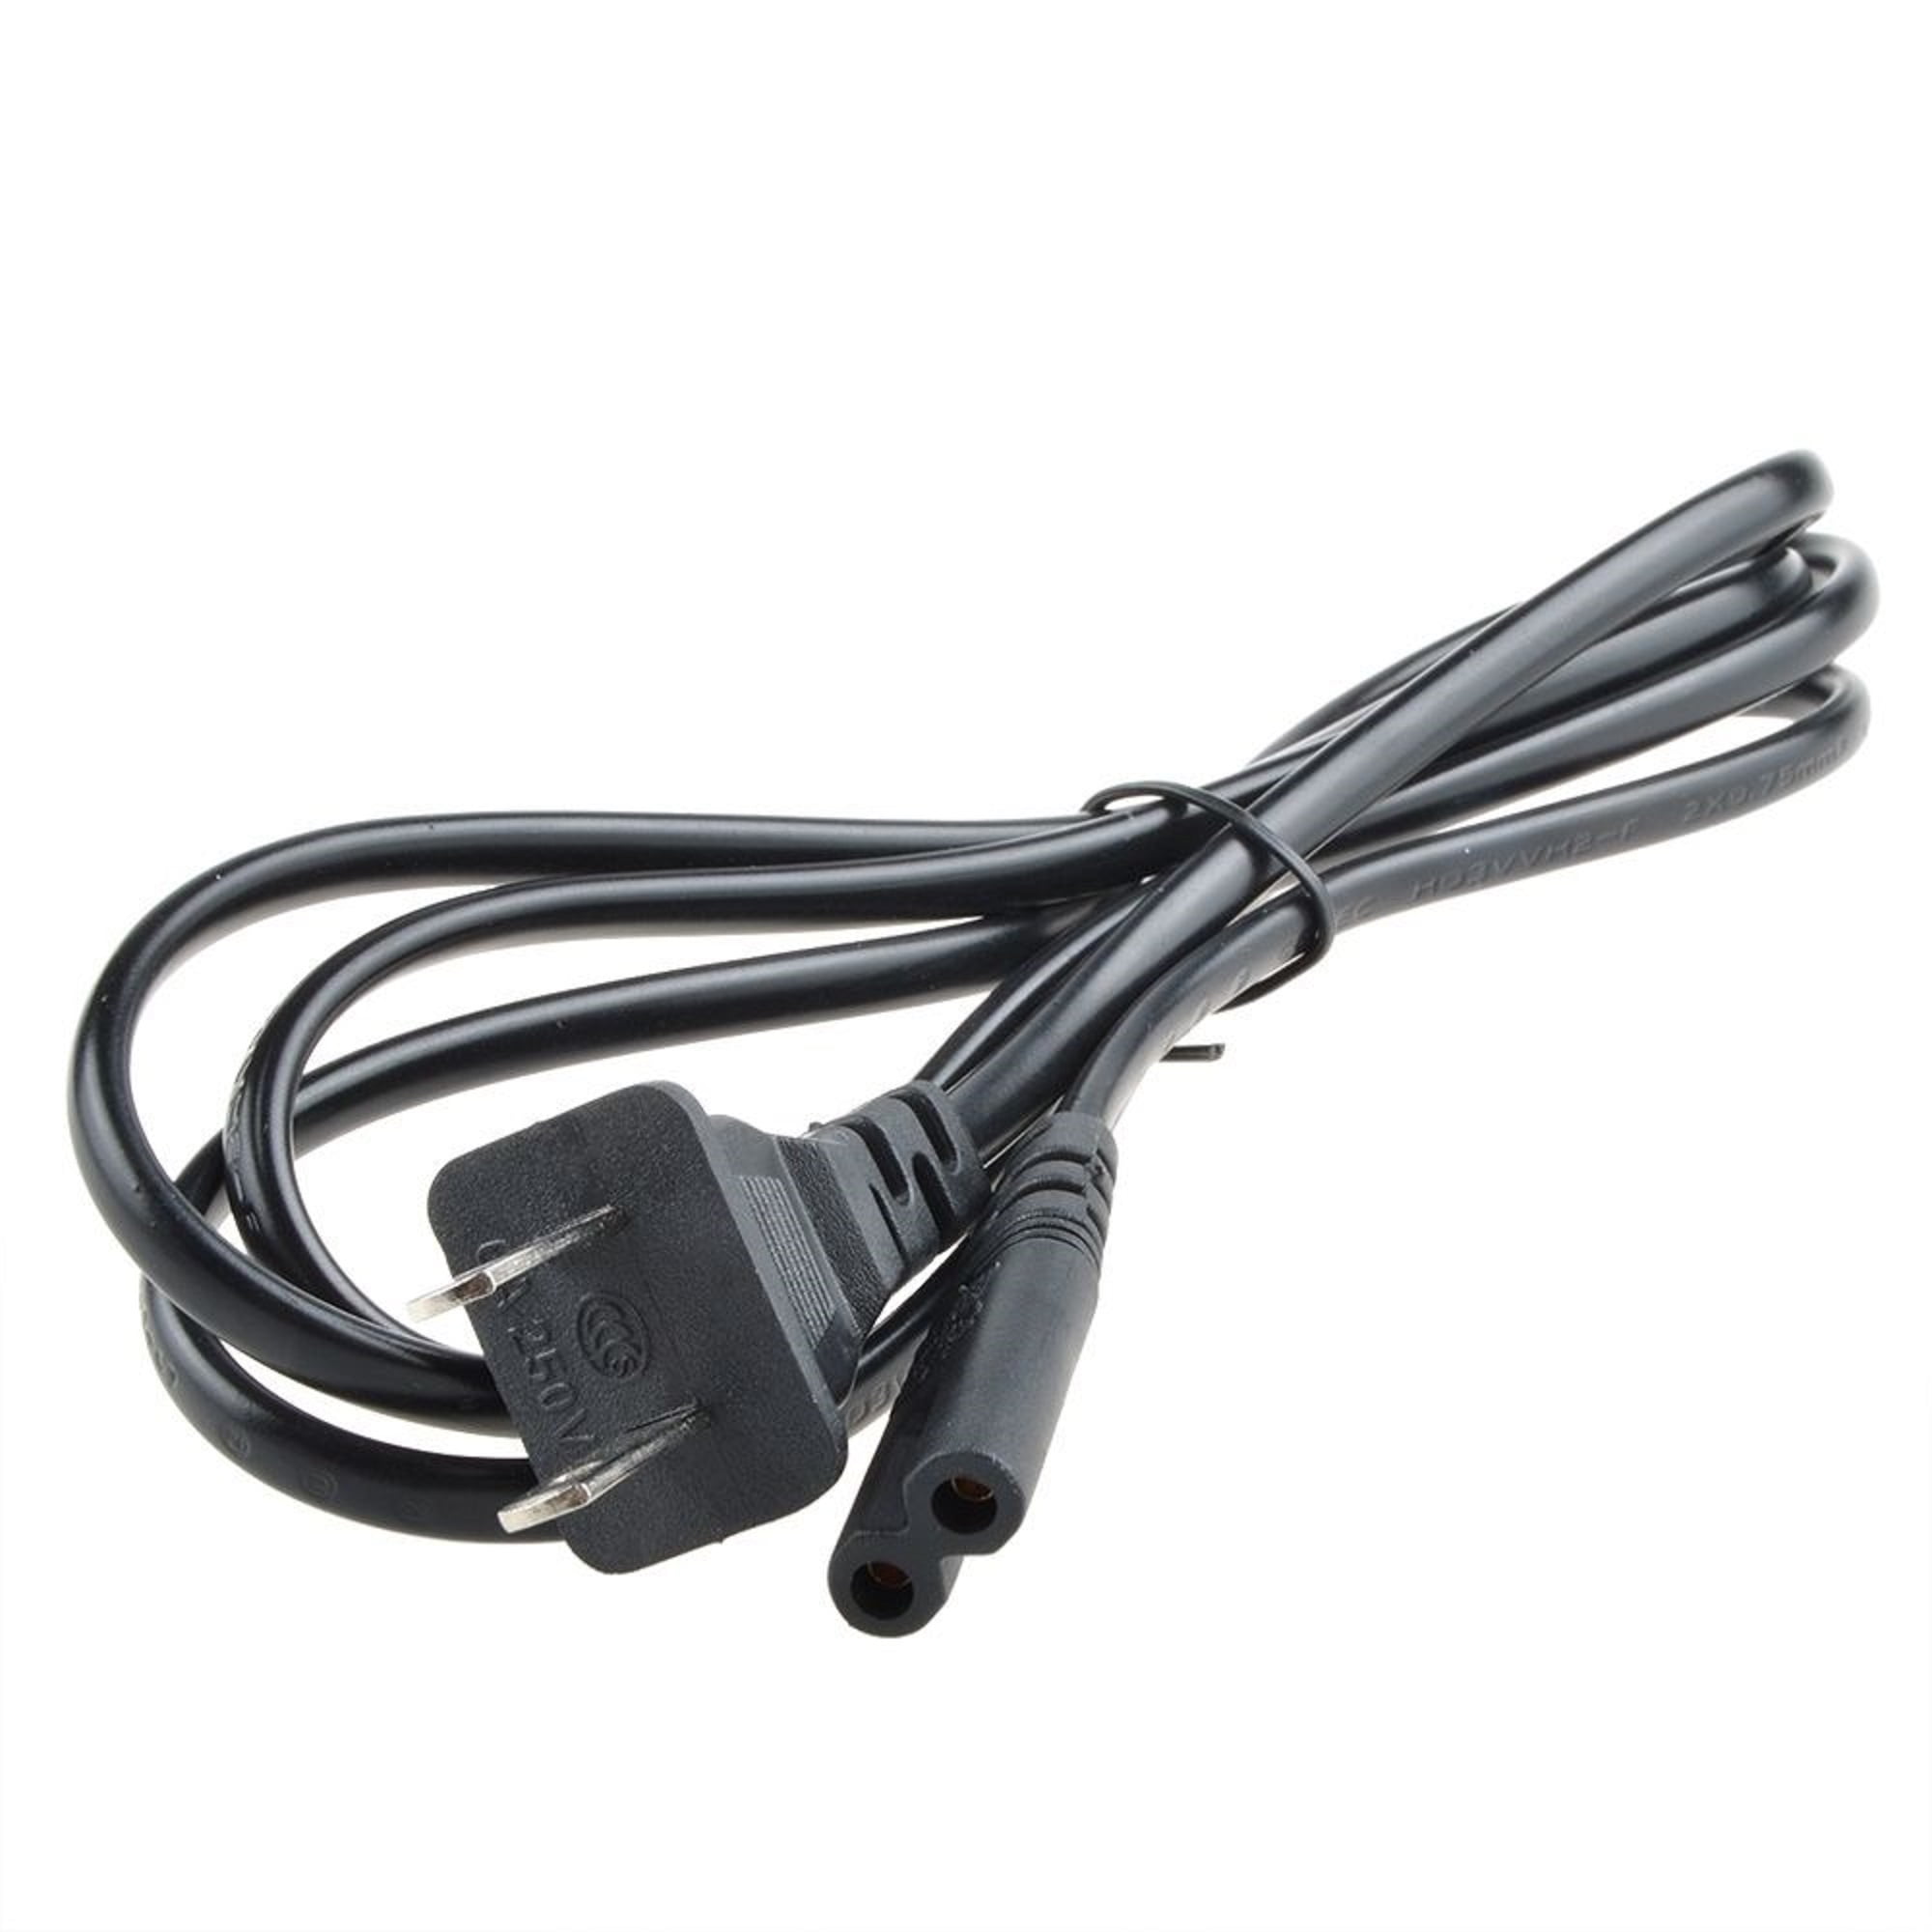 LGM AC Power Cable cord Figure 8 for Epson Stylus NX110 NX115 NX125 NX127 Printers 